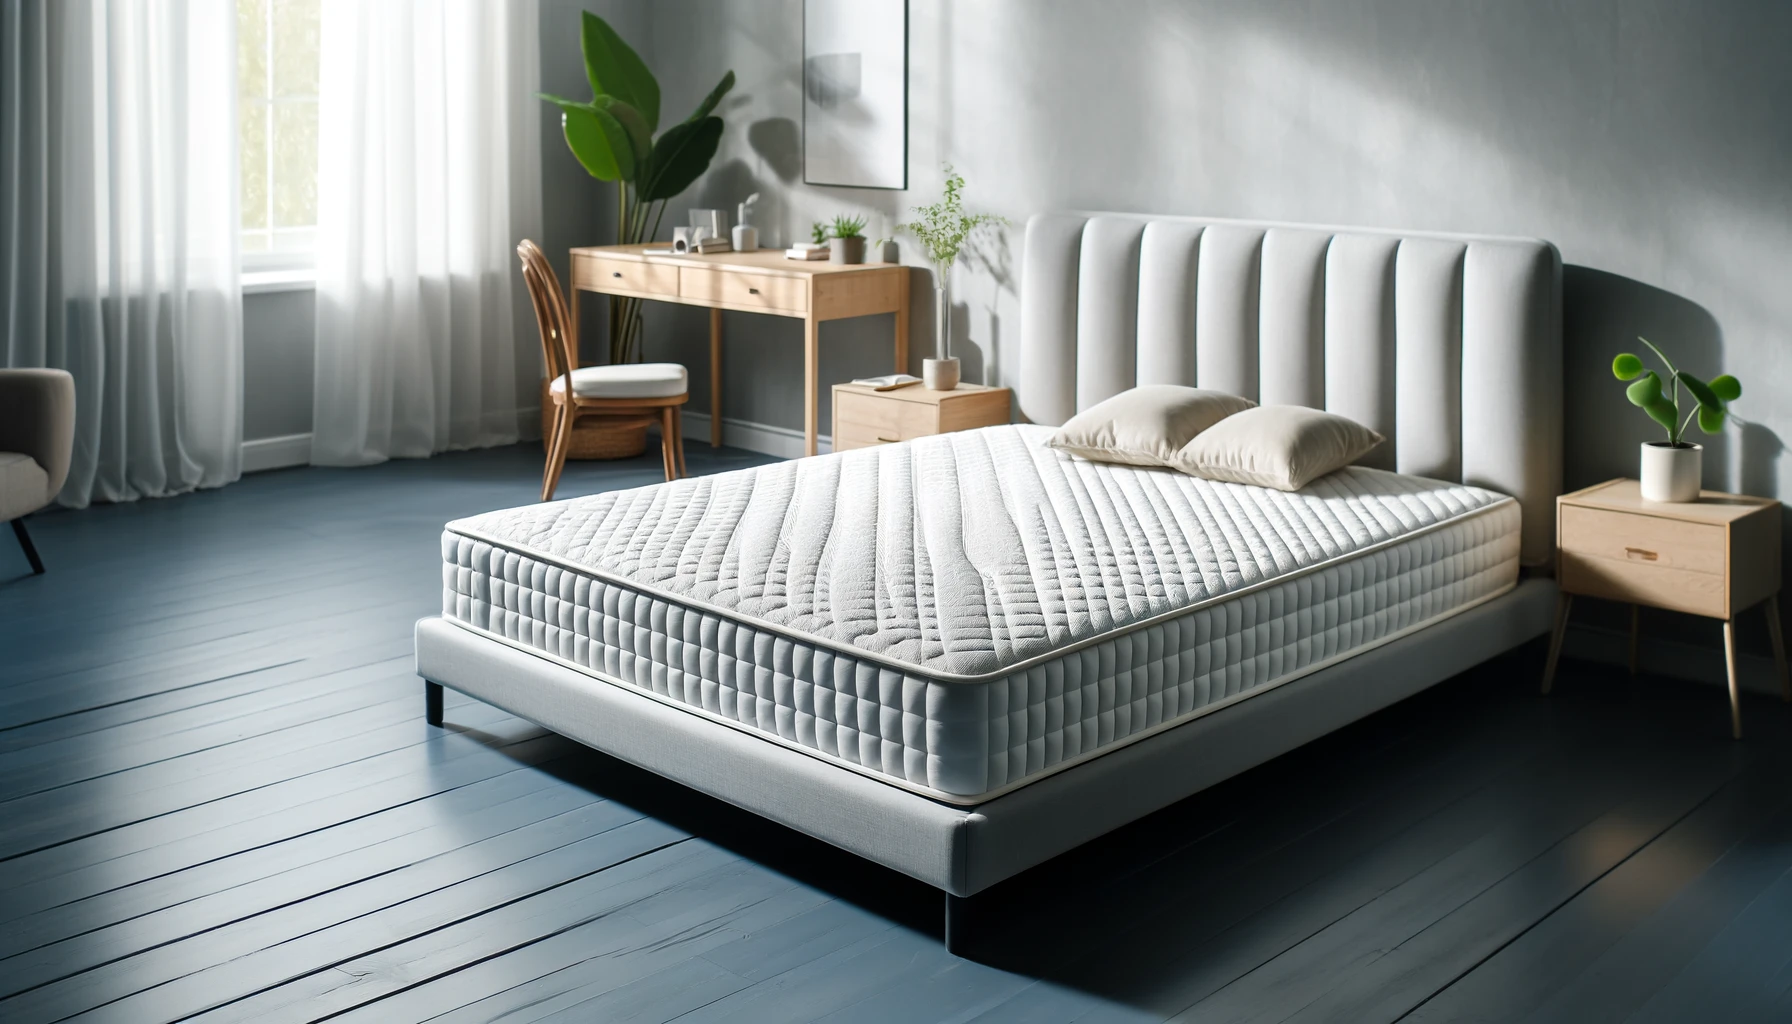 Современная спальня с высококачественным латексным матрасом на стильном каркасе кровати с удобной обстановкой.